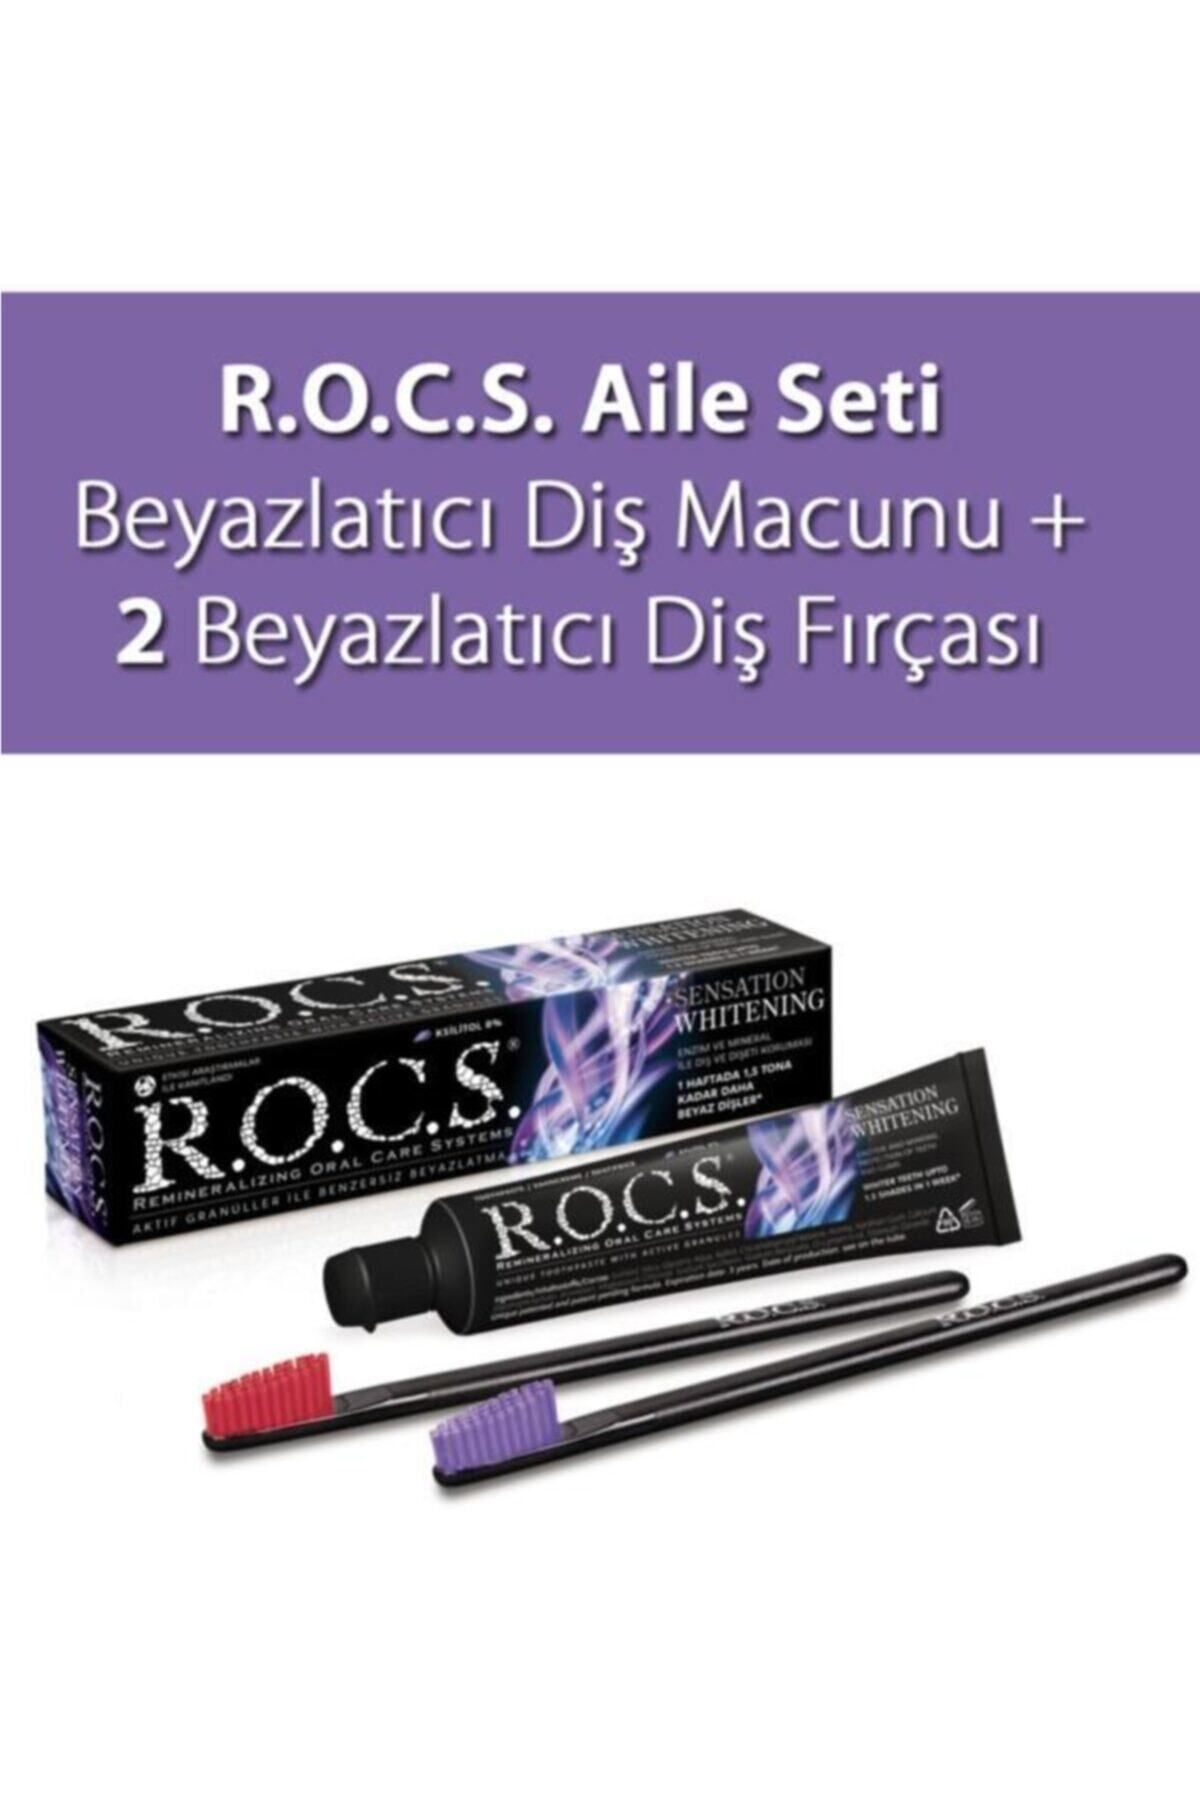 R.O.C.S. Rocs Sensation Whitening Beyazlatıcı Diş Macunu Ve 2 Diş Fırçası